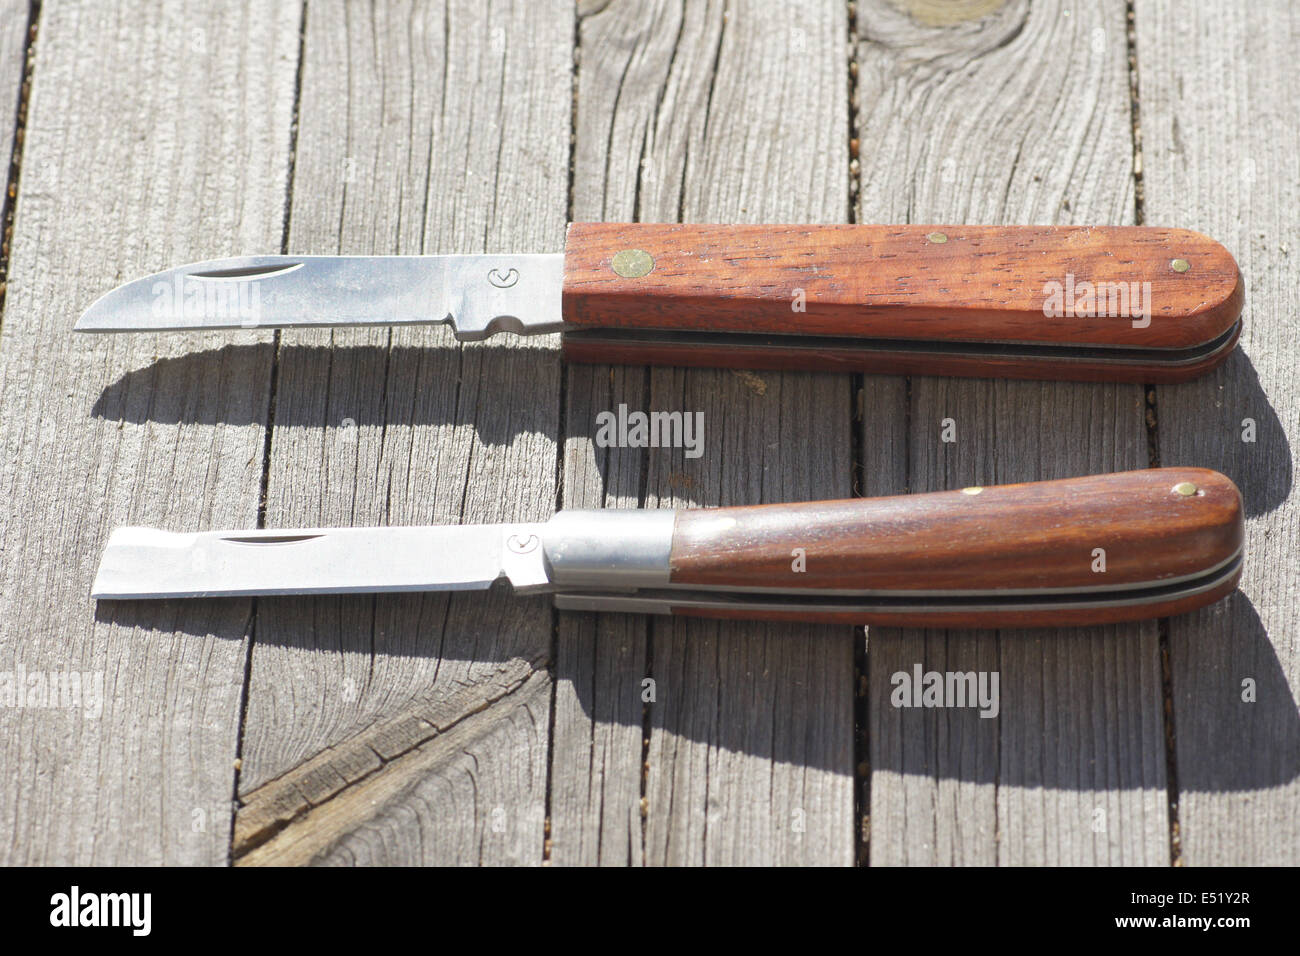 Garden knifes Stock Photo